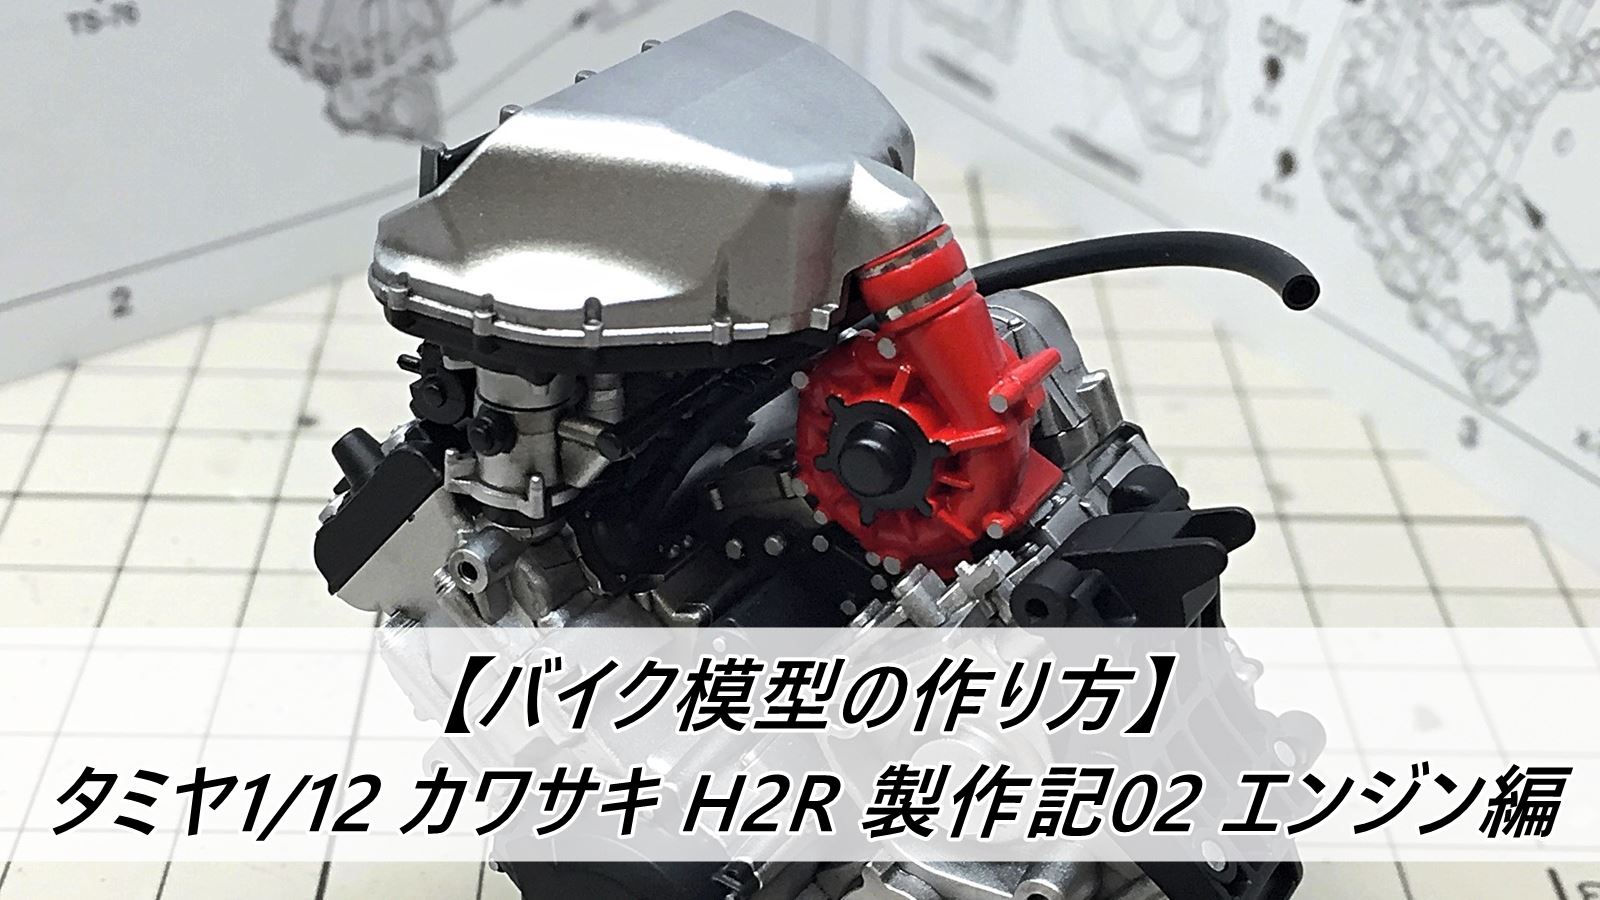 バイク模型の作り方 タミヤ1 12 カワサキ H2r 製作記02 エンジン編 雑食プラモ備忘ログ